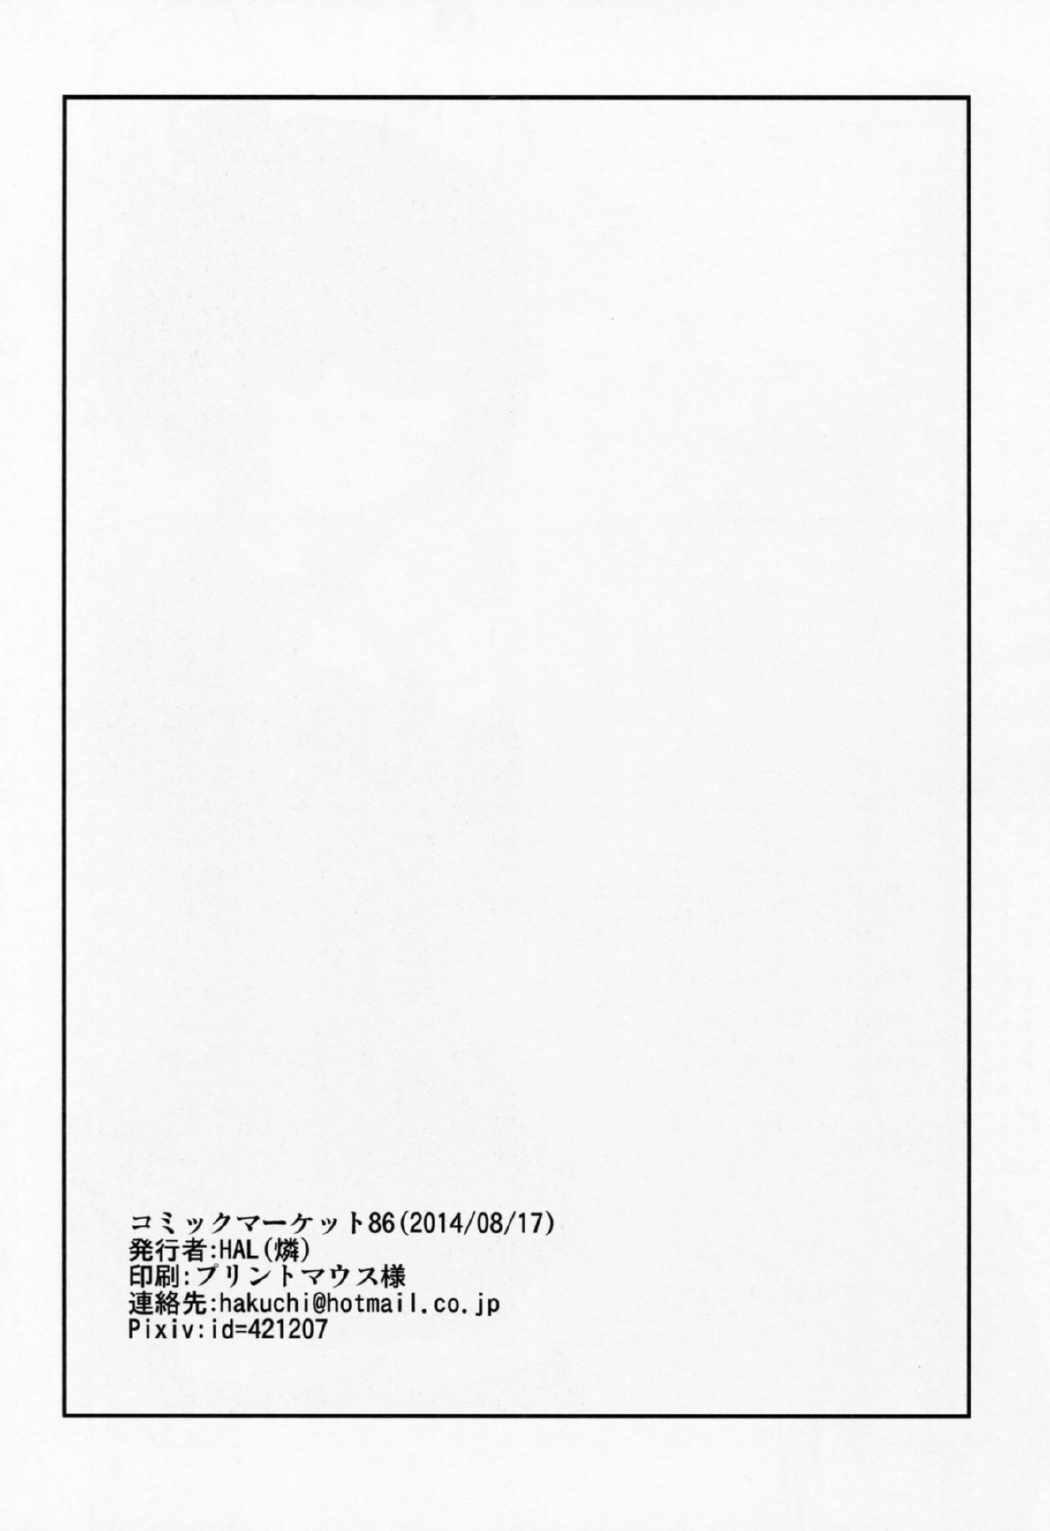 Bear Konton Naru Eros e Youkoso - Chuunibyou demo koi ga shitai Tgirl - Page 15